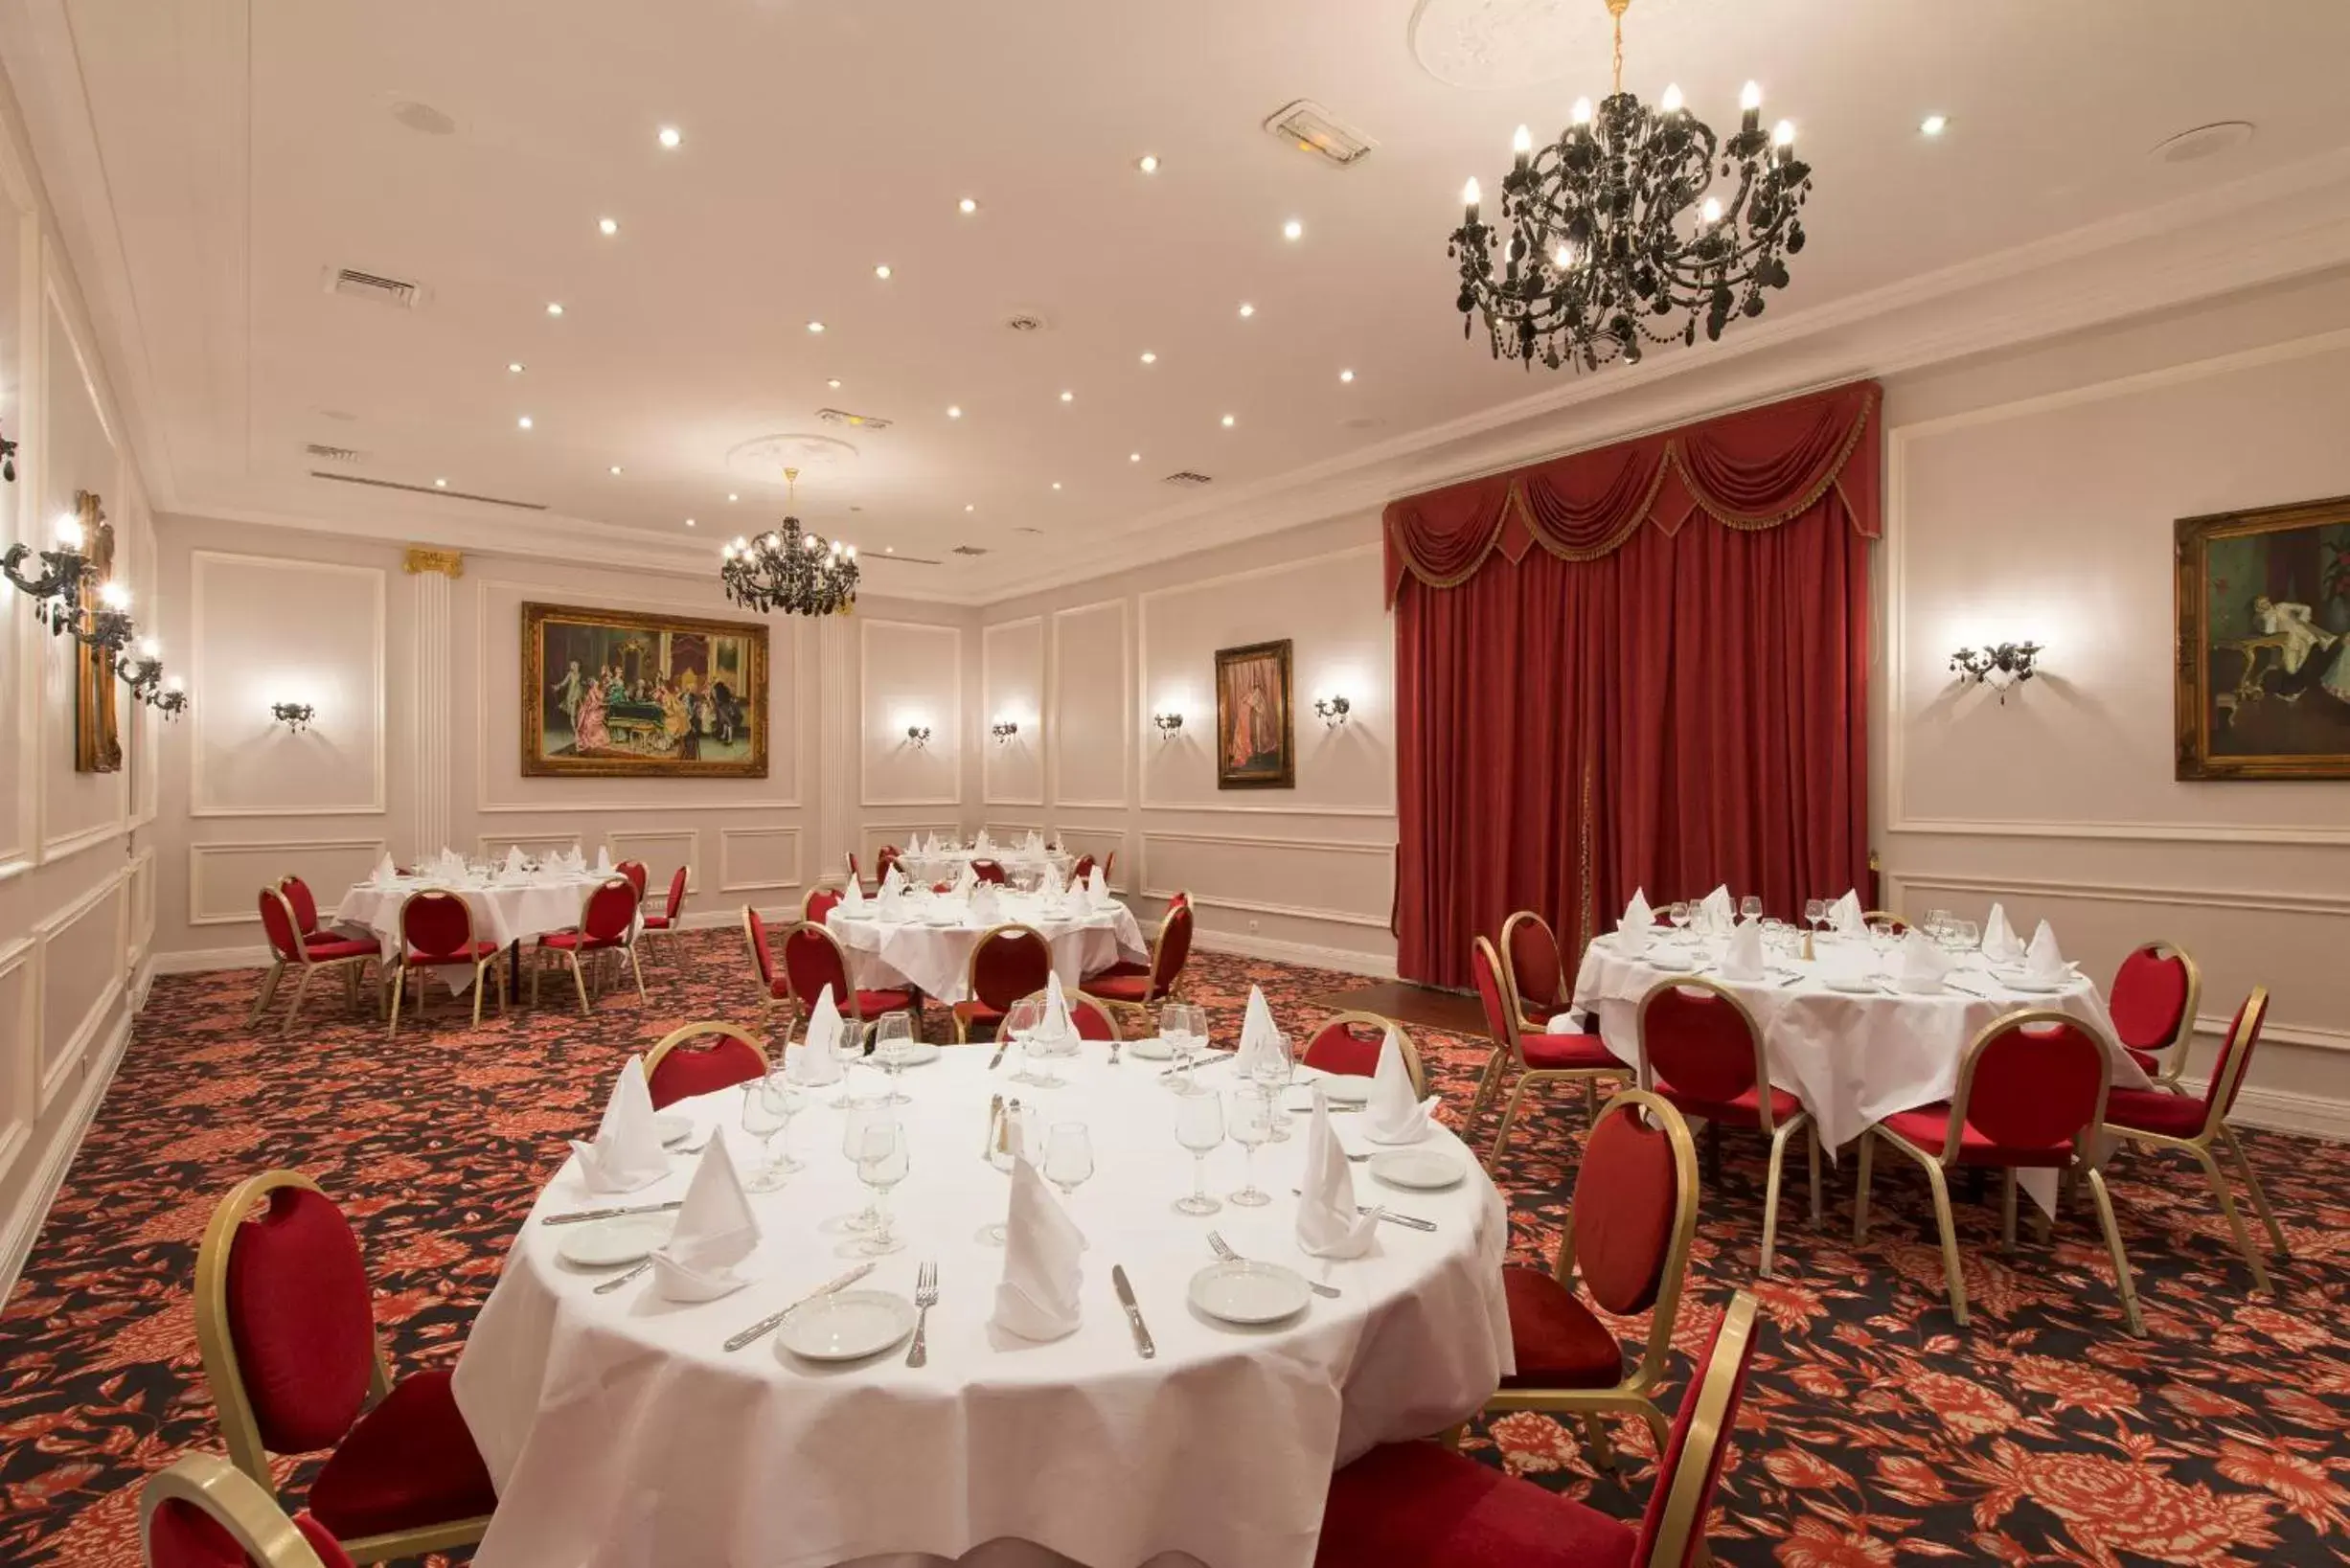 Banquet/Function facilities, Banquet Facilities in Hôtel West End Promenade